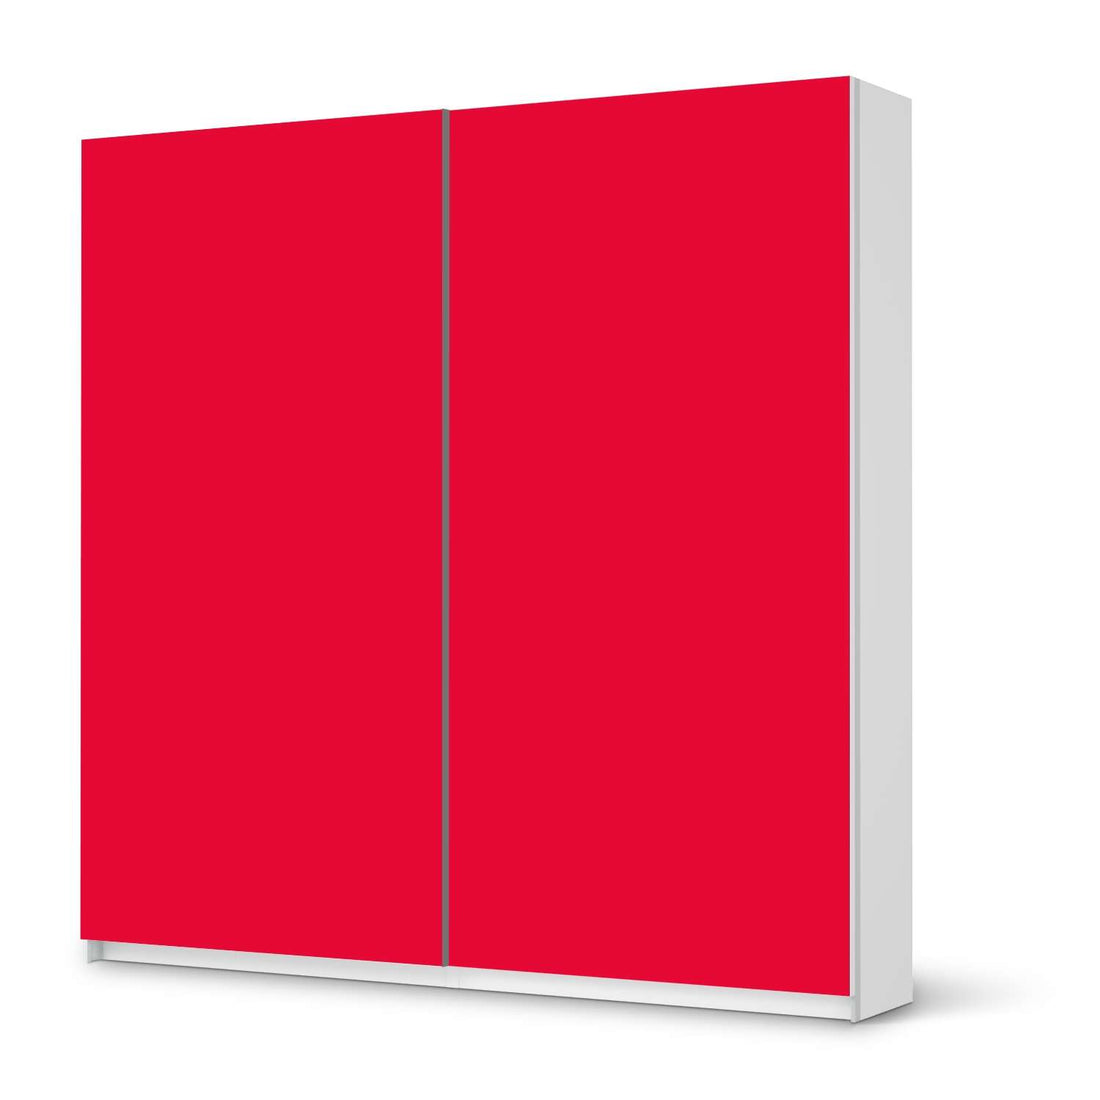 Möbel Klebefolie Rot Light - IKEA Pax Schrank 201 cm Höhe - Schiebetür - weiss